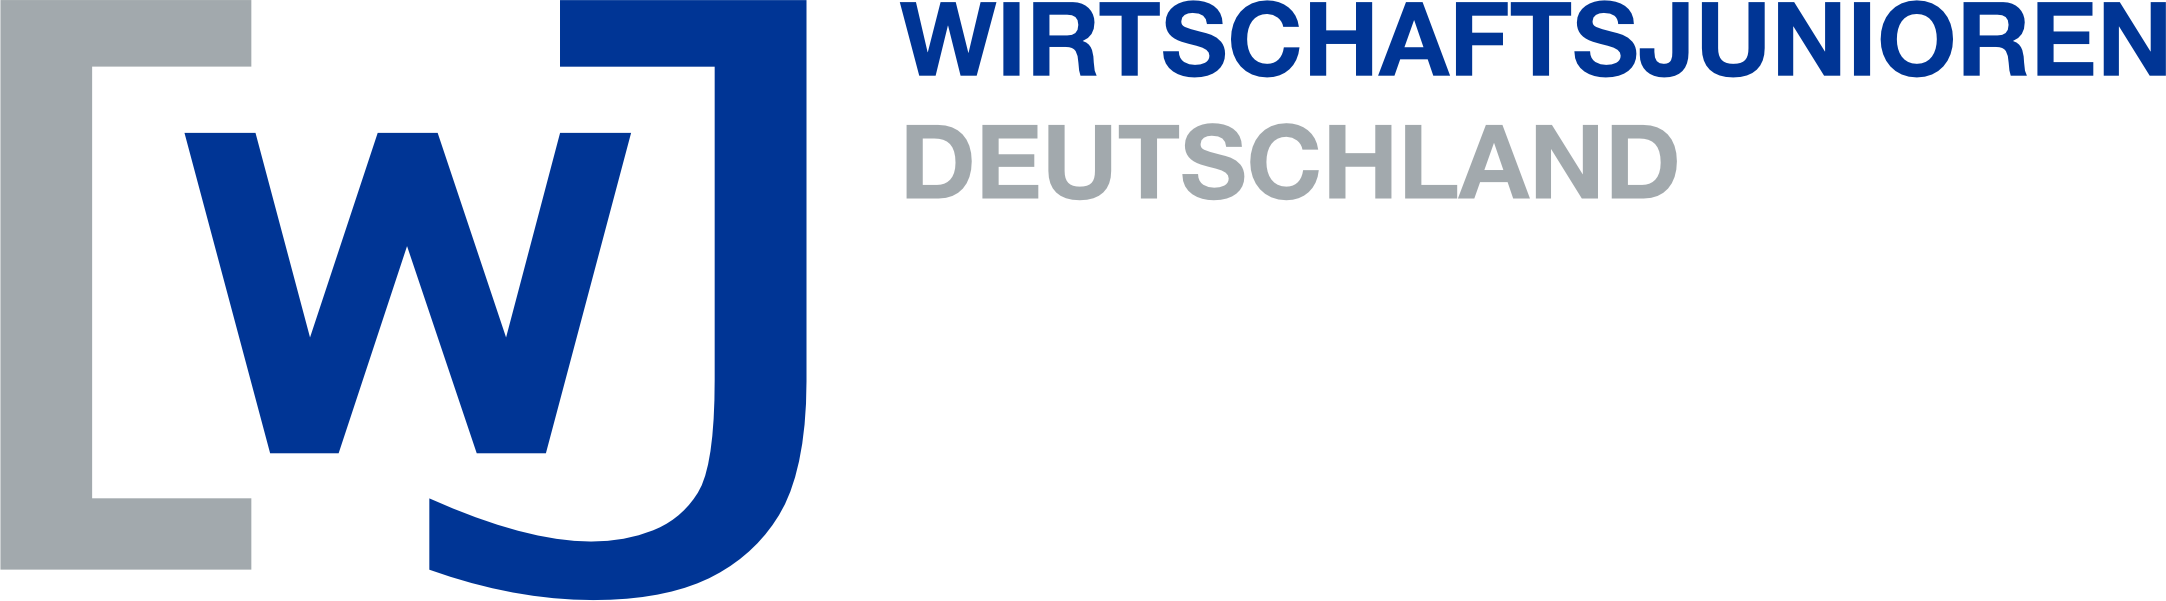 Wirtschaftsjunioren Deutschland Logo